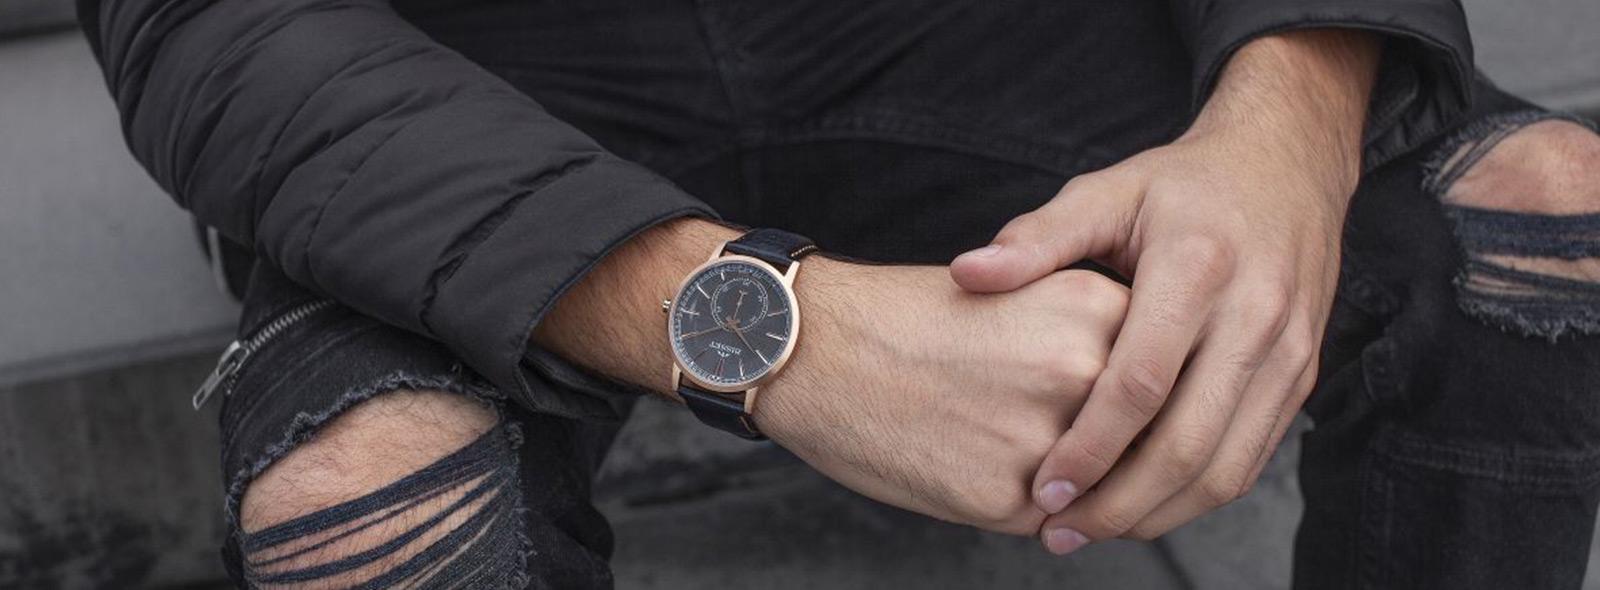 Męskie czarne zegarki – wybieramy najładniejsze modele | Zegarownia.pl Blog